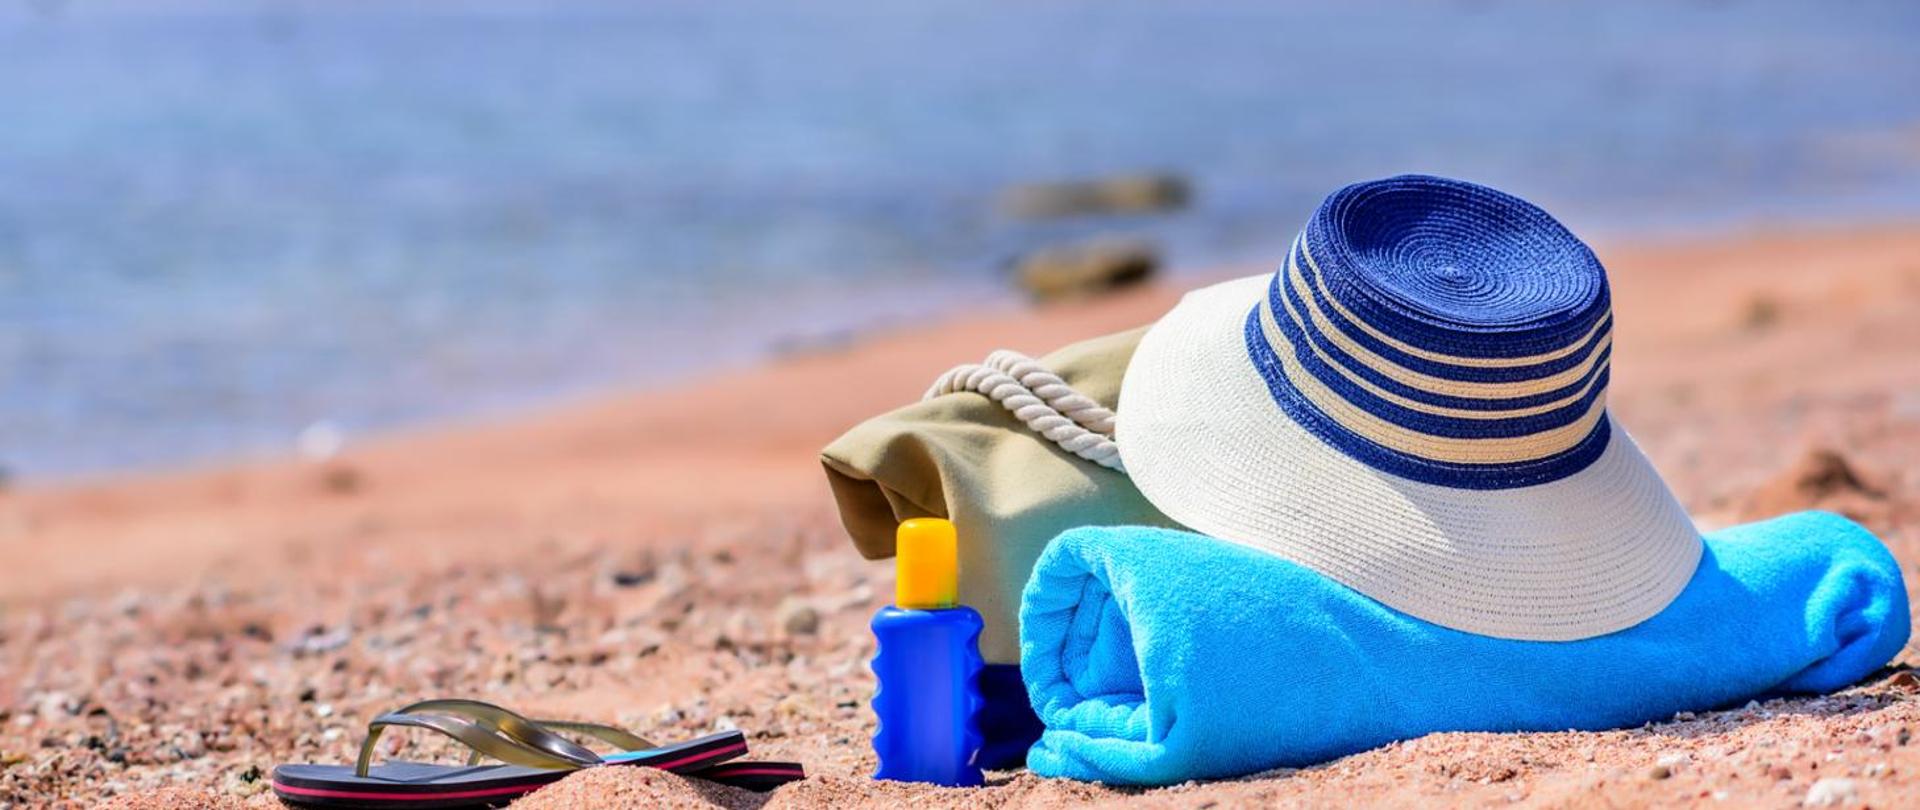 Na piaszczystej plaży leżą: niebieski ręcznik, biało-niebieski kapelusz, olejek do ciała oraz klapki kąpielowe i koc